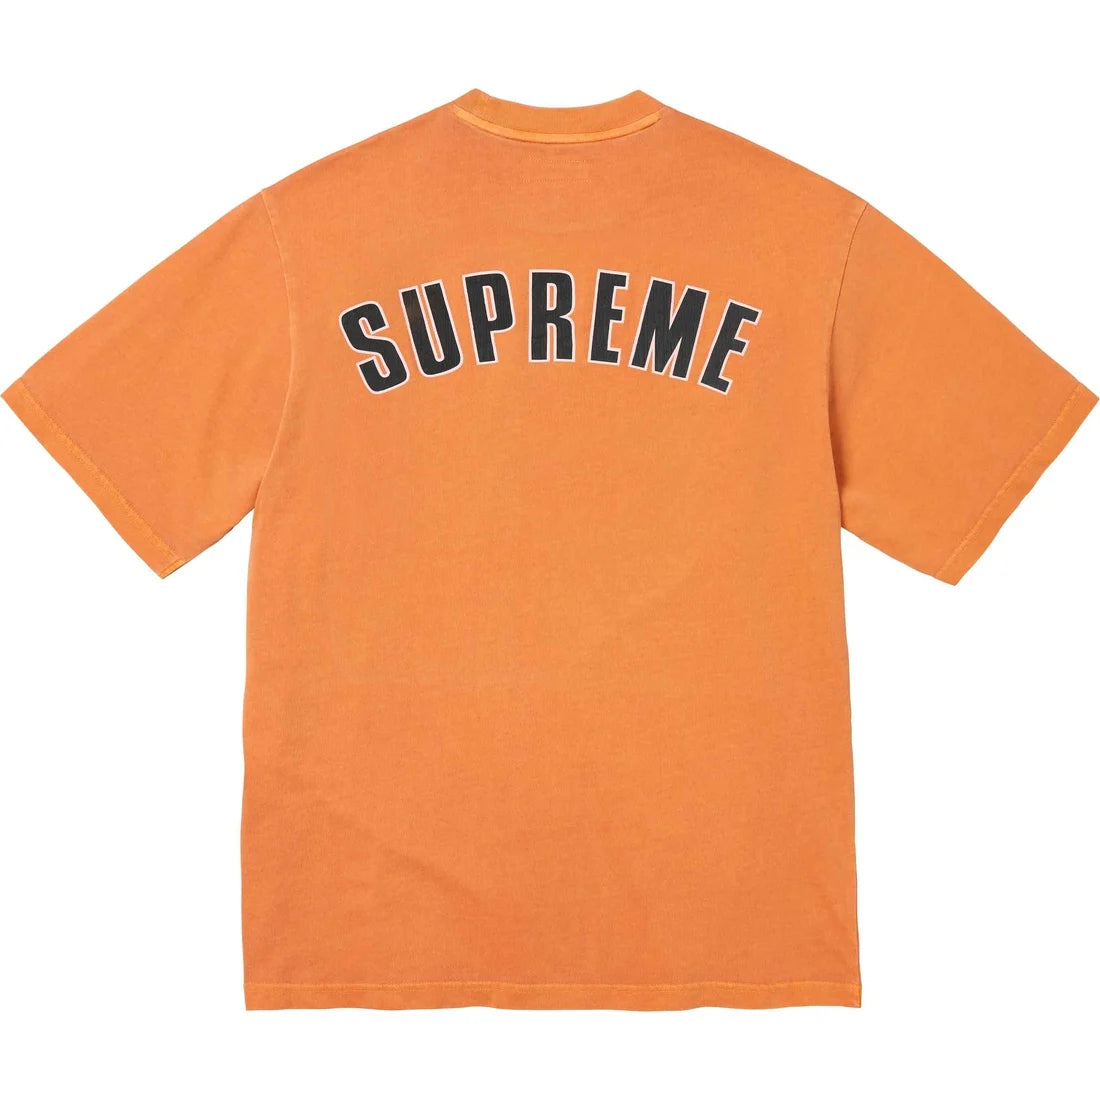 Supreme Cracked Arc S/S Top Orange